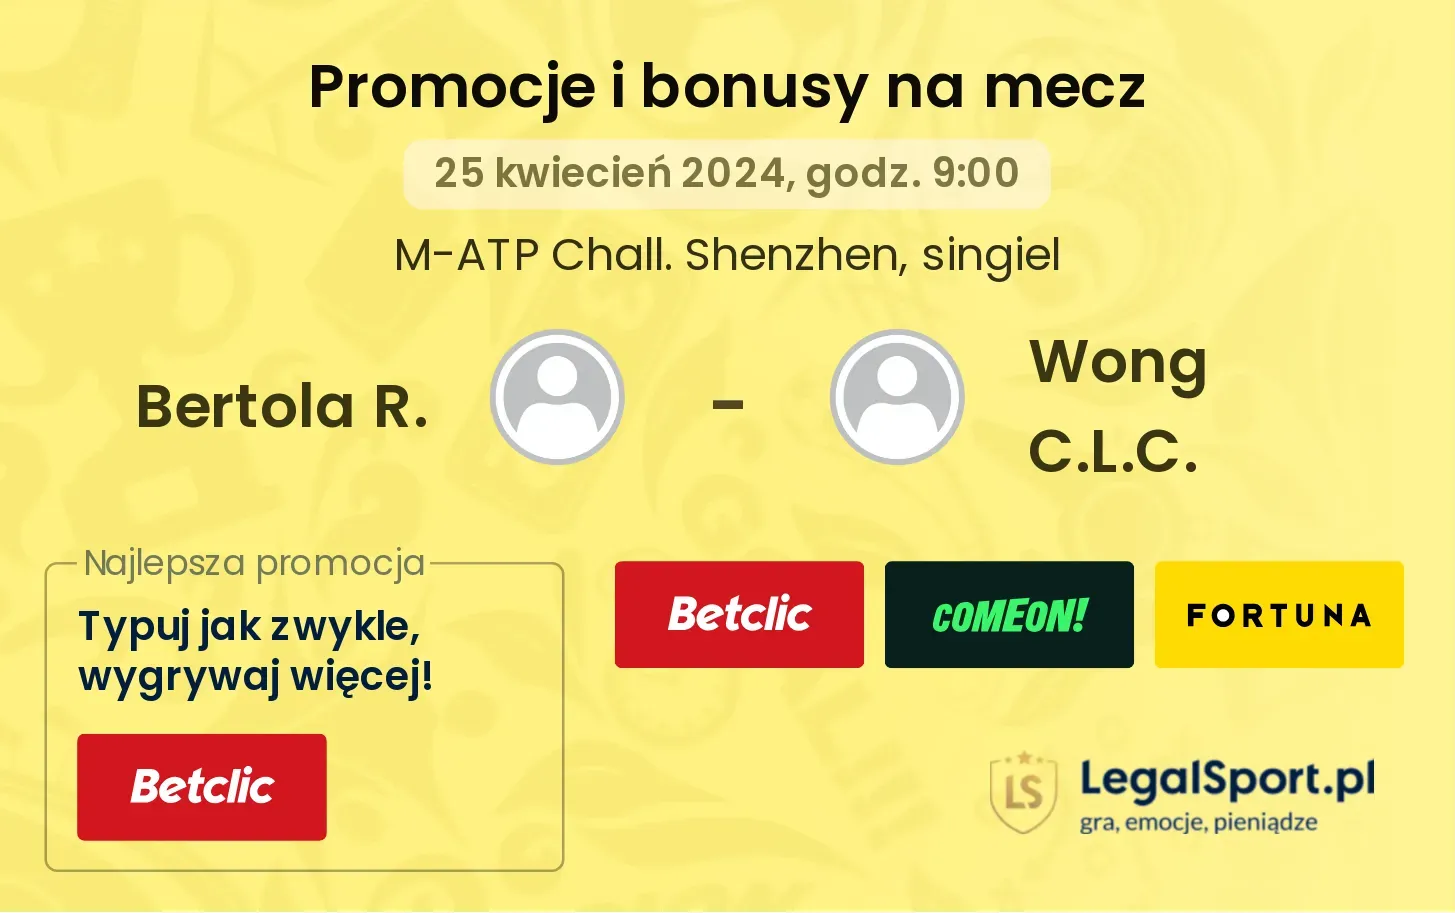 Bertola R. - Wong C.L.C. promocje bonusy na mecz